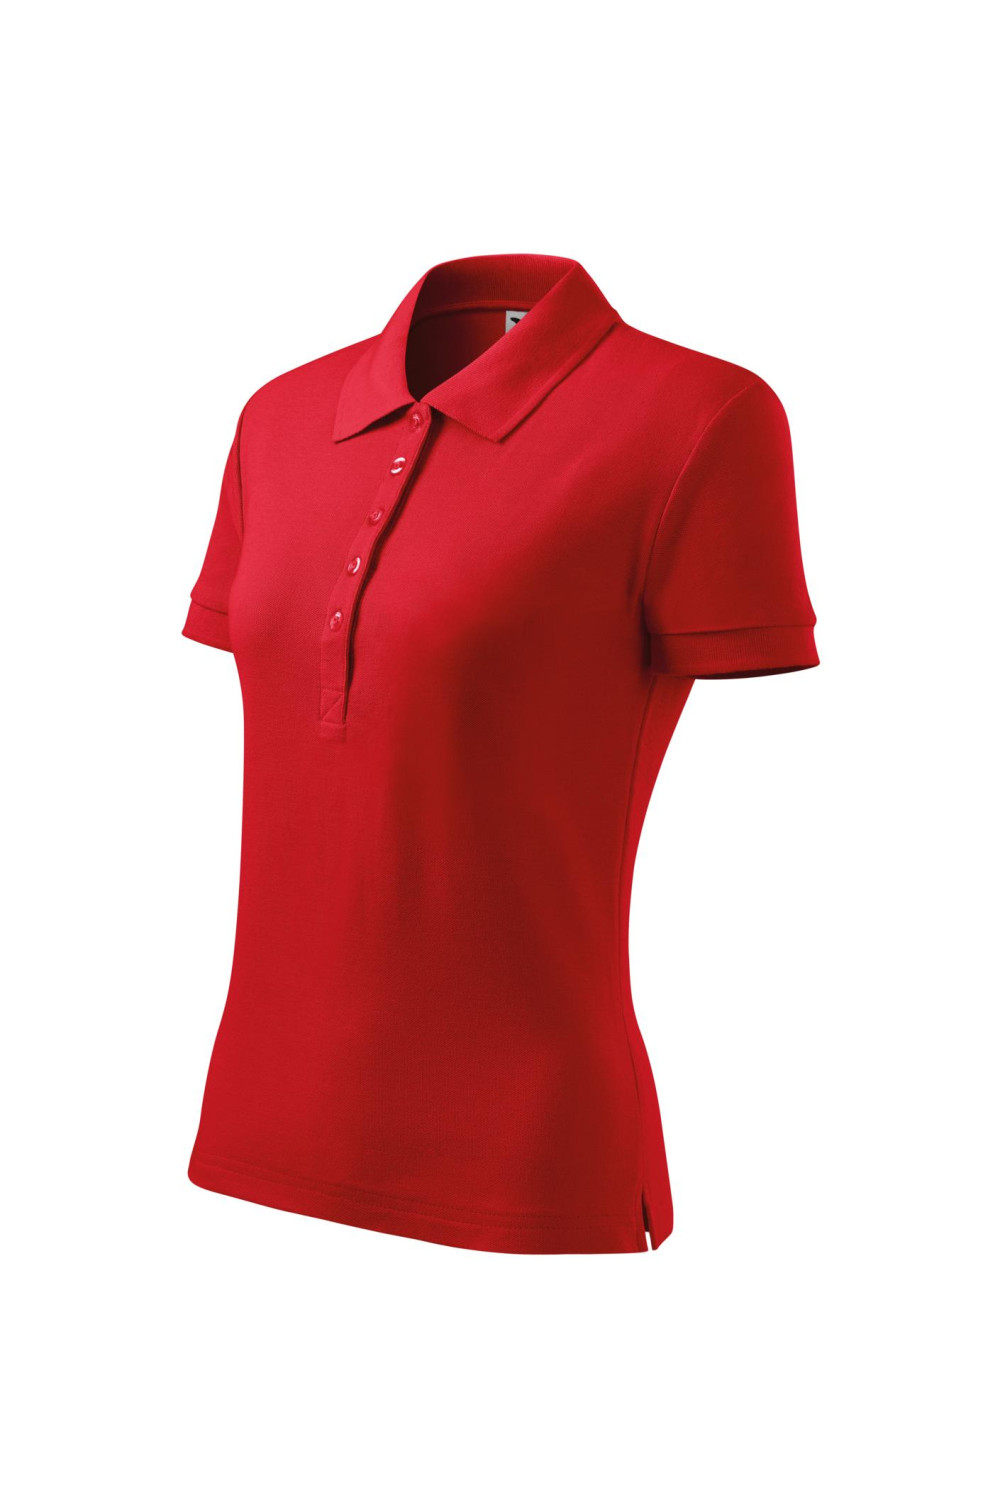 COTTON 213 MALFINI ADLER Koszulka Polo damska klasyczna 100% bawełna czerwony